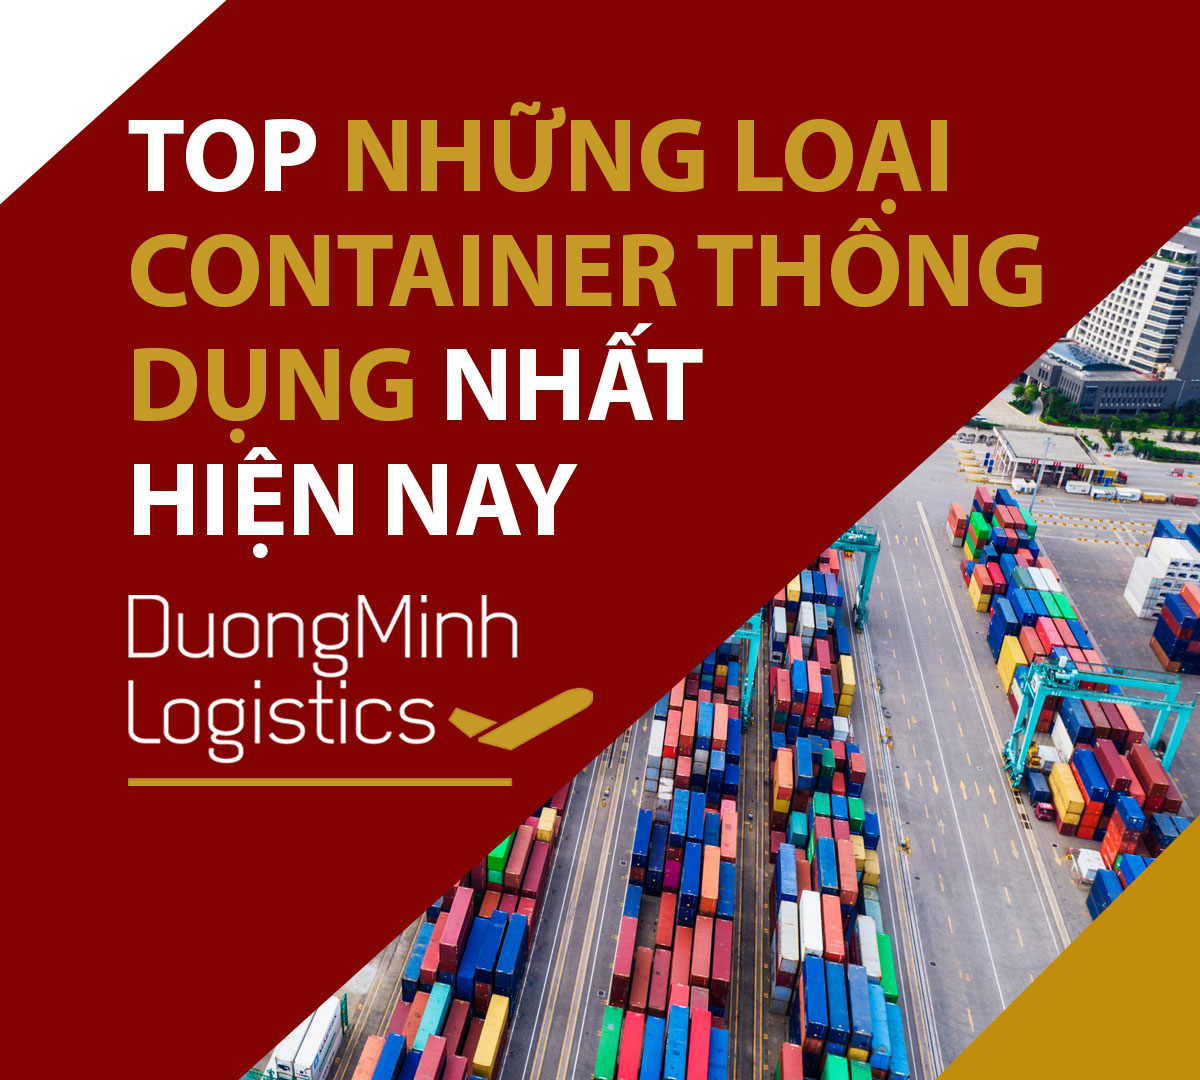 Top những loại container thông dụng nhất hiện nay